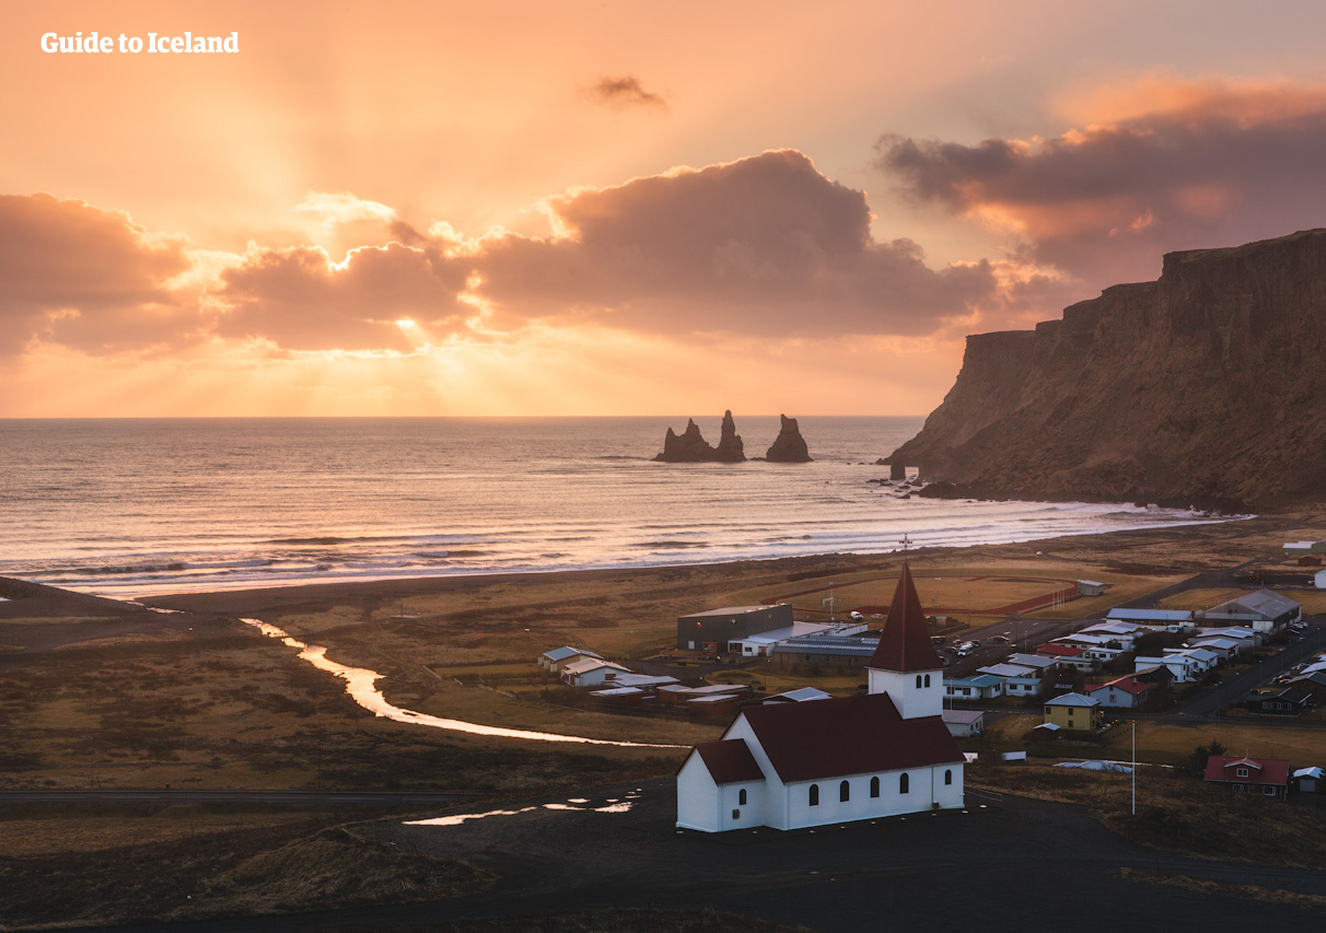 Missa inte att besöka Skaftafells naturreservat om du kör runt på sydöstra Island. Där kan du förundras över platser som exempelvis glaciärlagunen Svínafellsjökull.